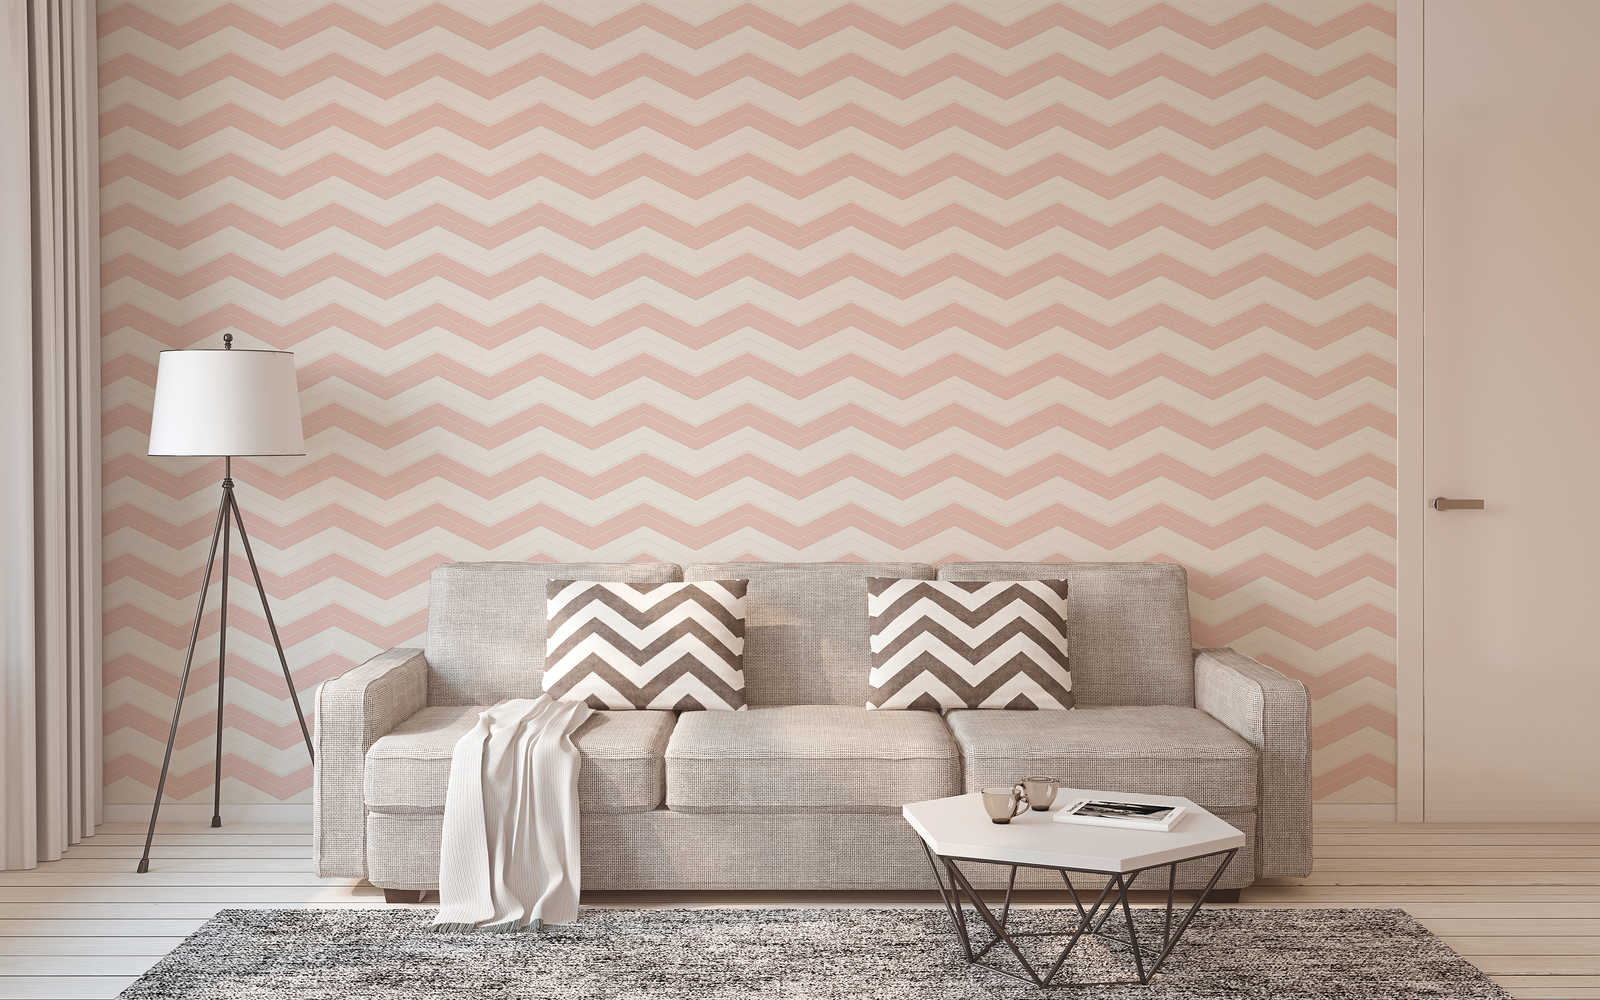             Behang met zigzaglijnen dwarsgestreept - roze, wit
        